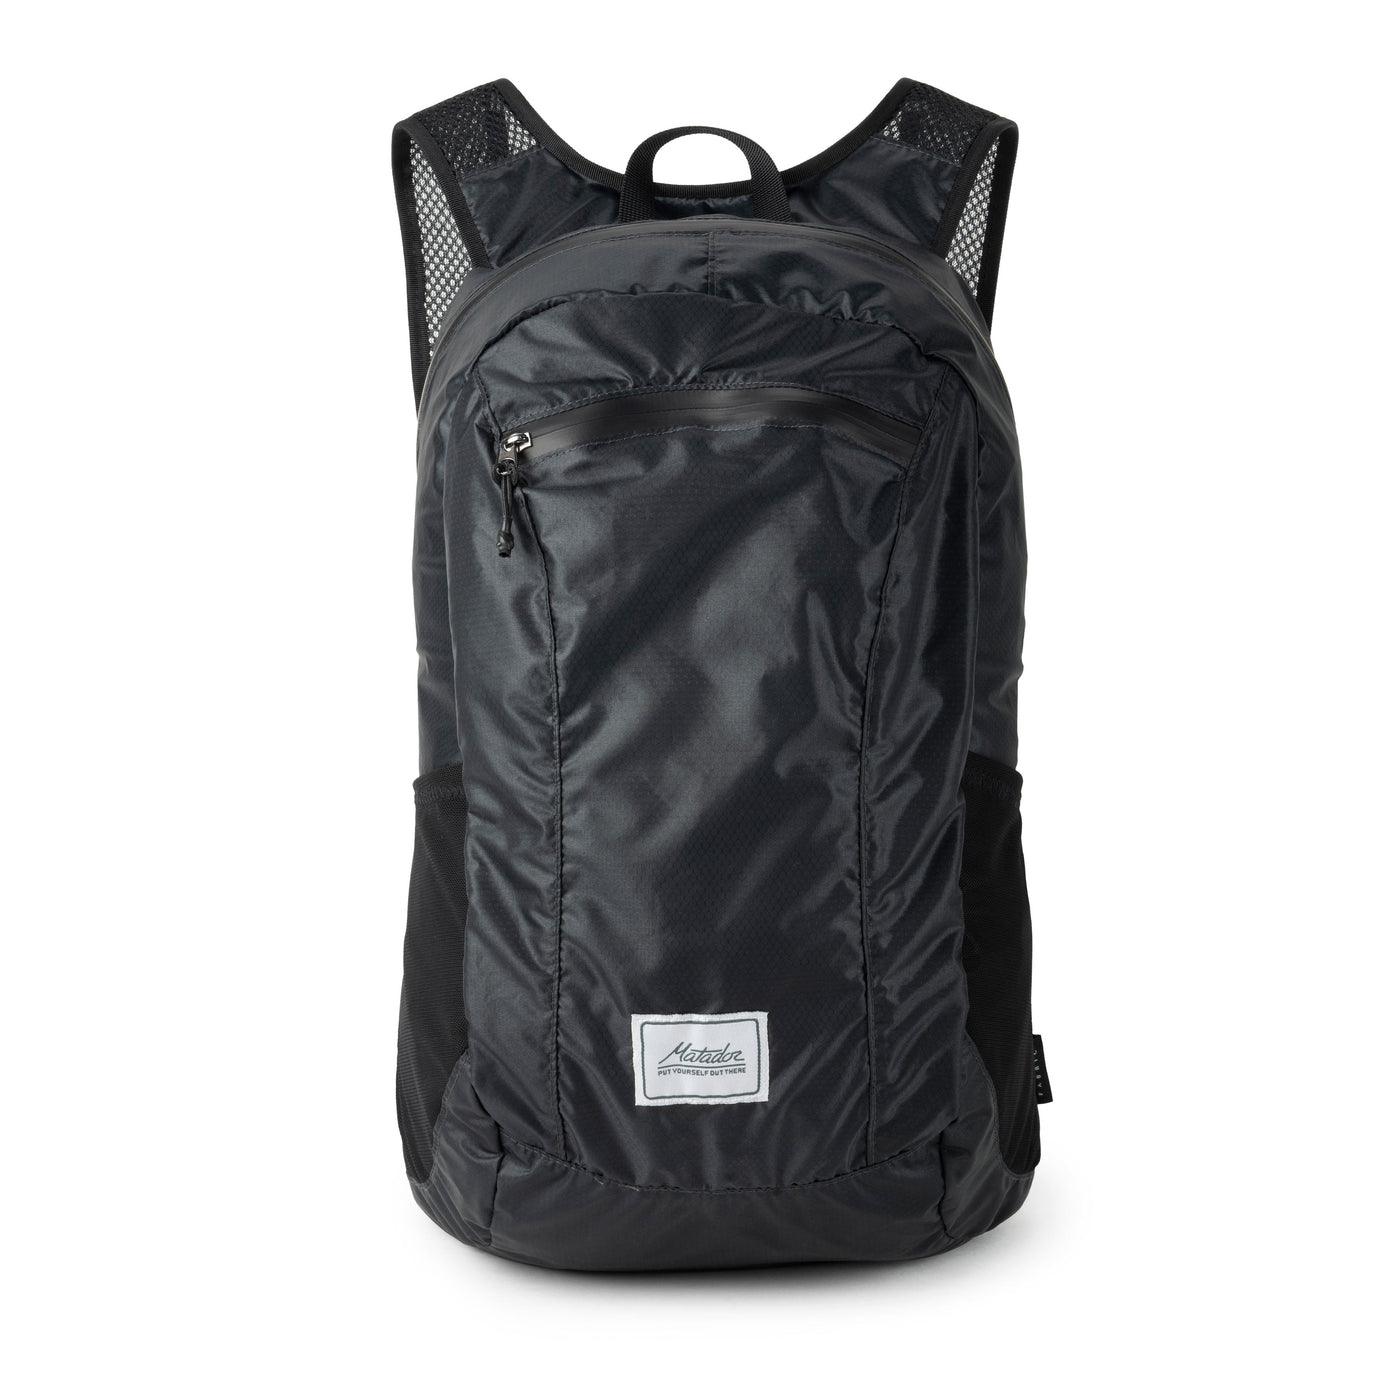 Matador DL16 Backpack (Grey) - The Lake and Company